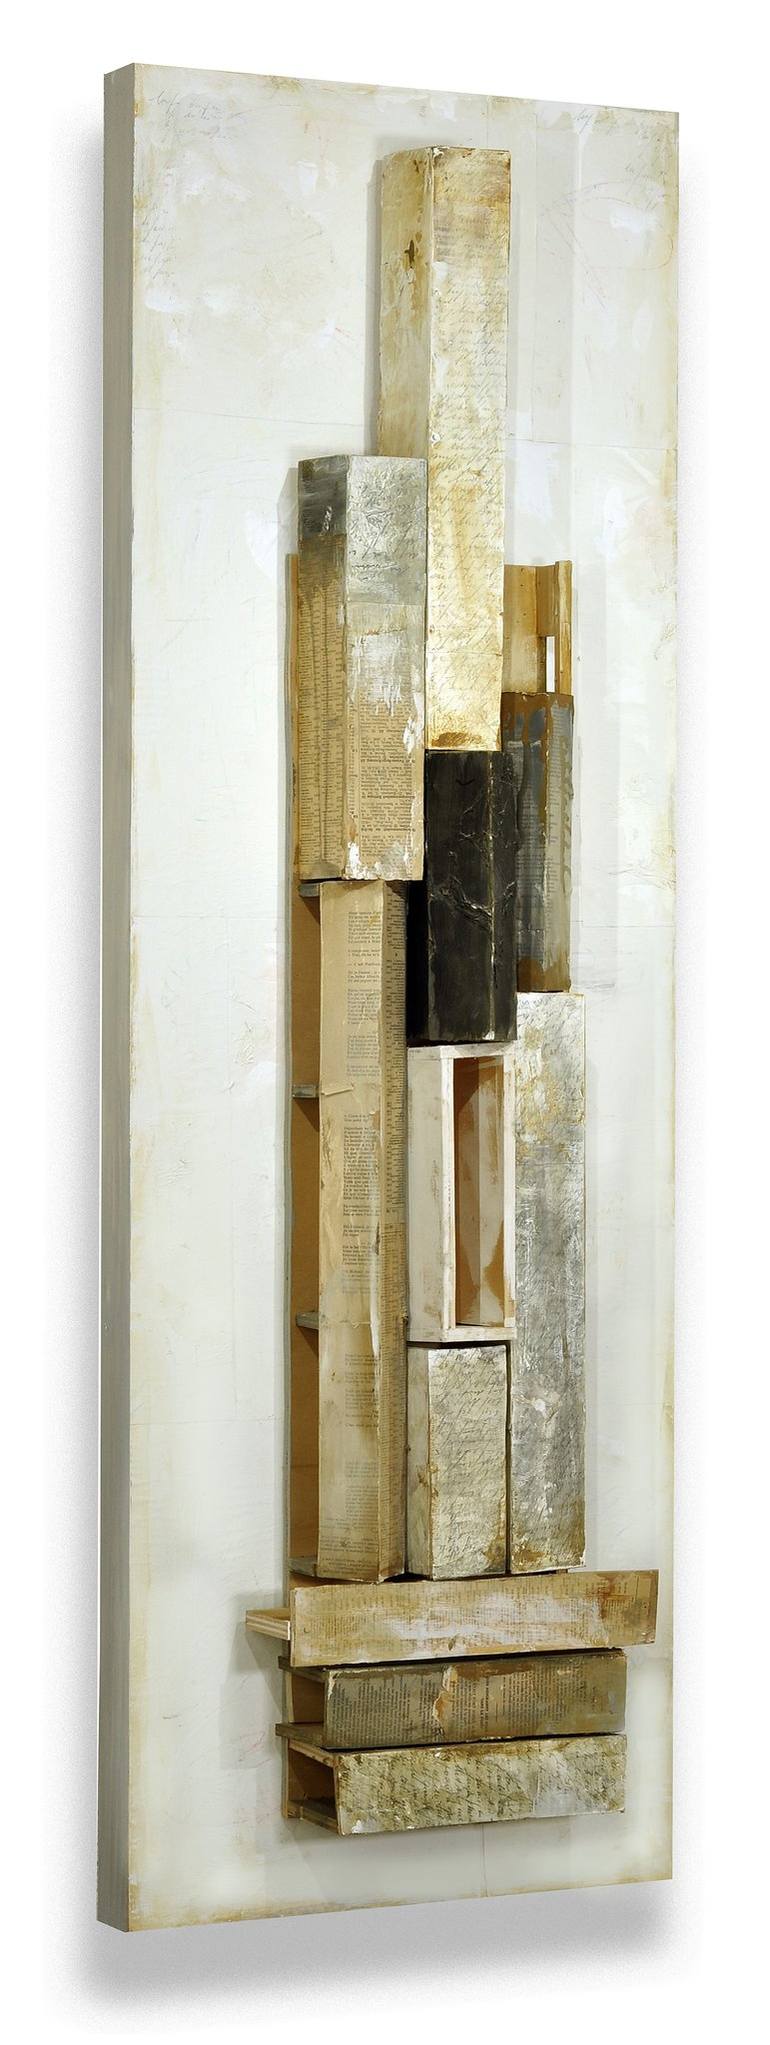 Original Bauhaus Abstract Sculpture by Juliet Vles